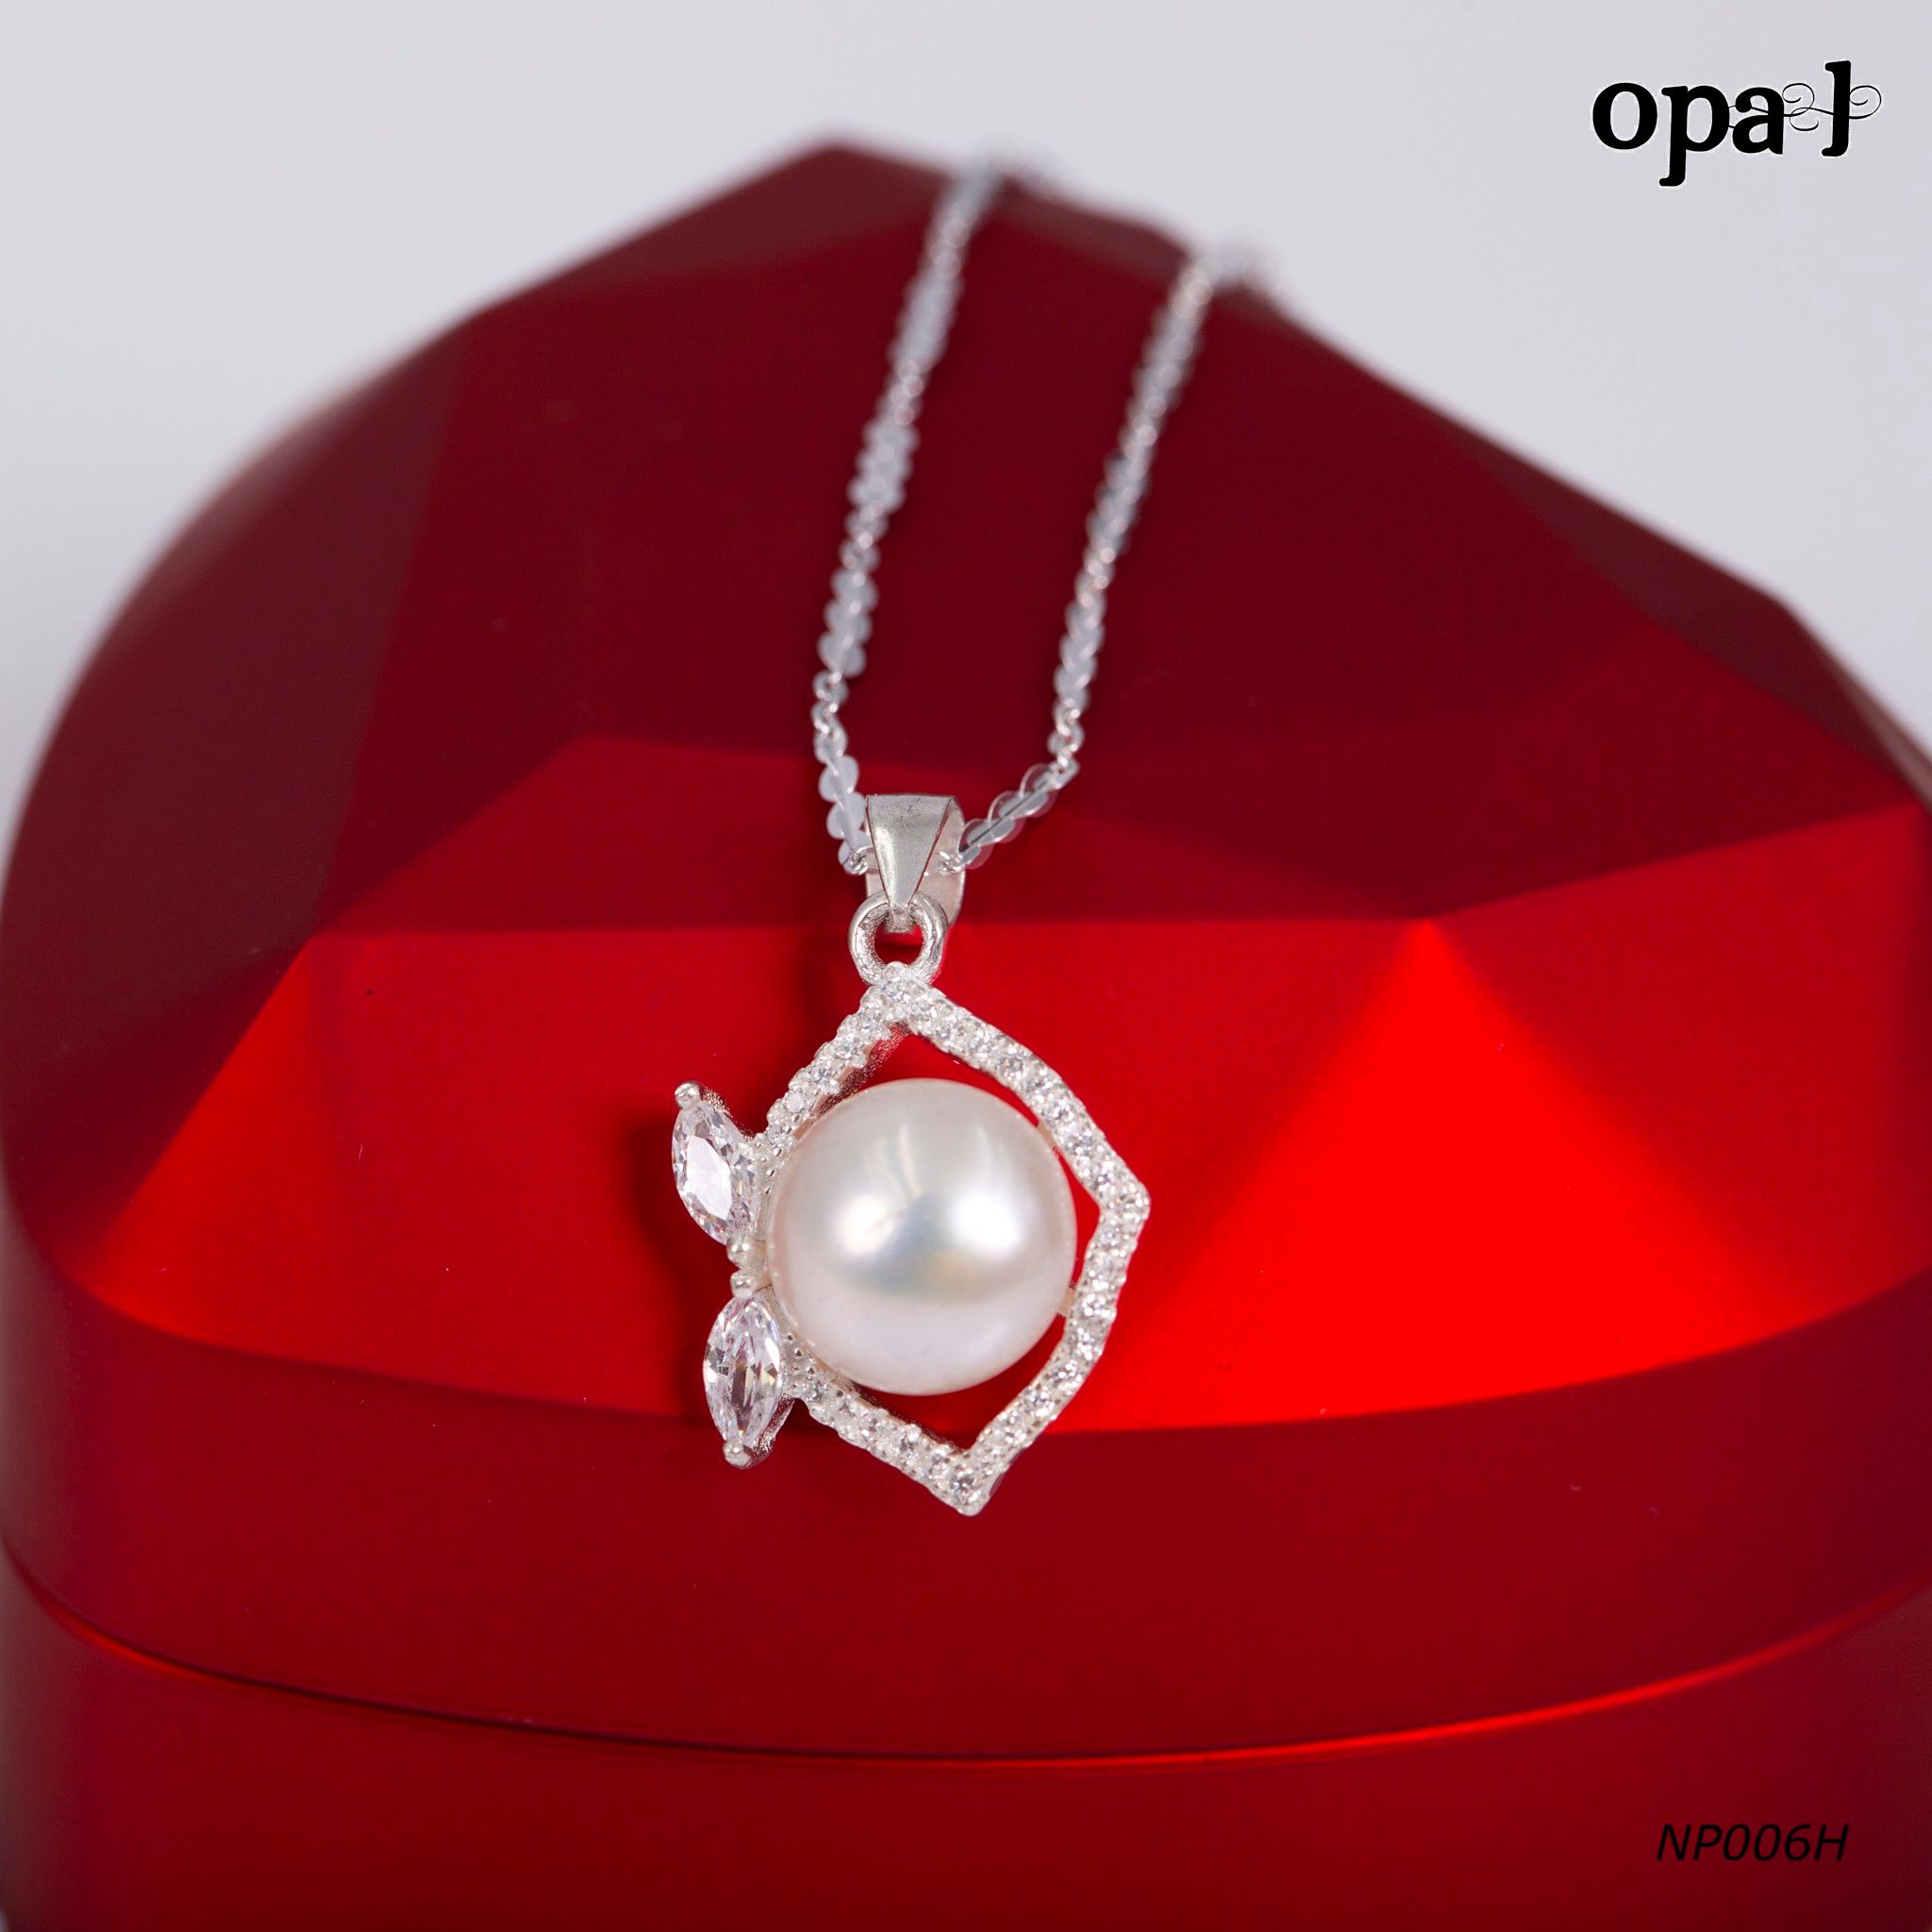  NP006H -Dây chuyền bạc kèm mặt ngọc trai OPAL 